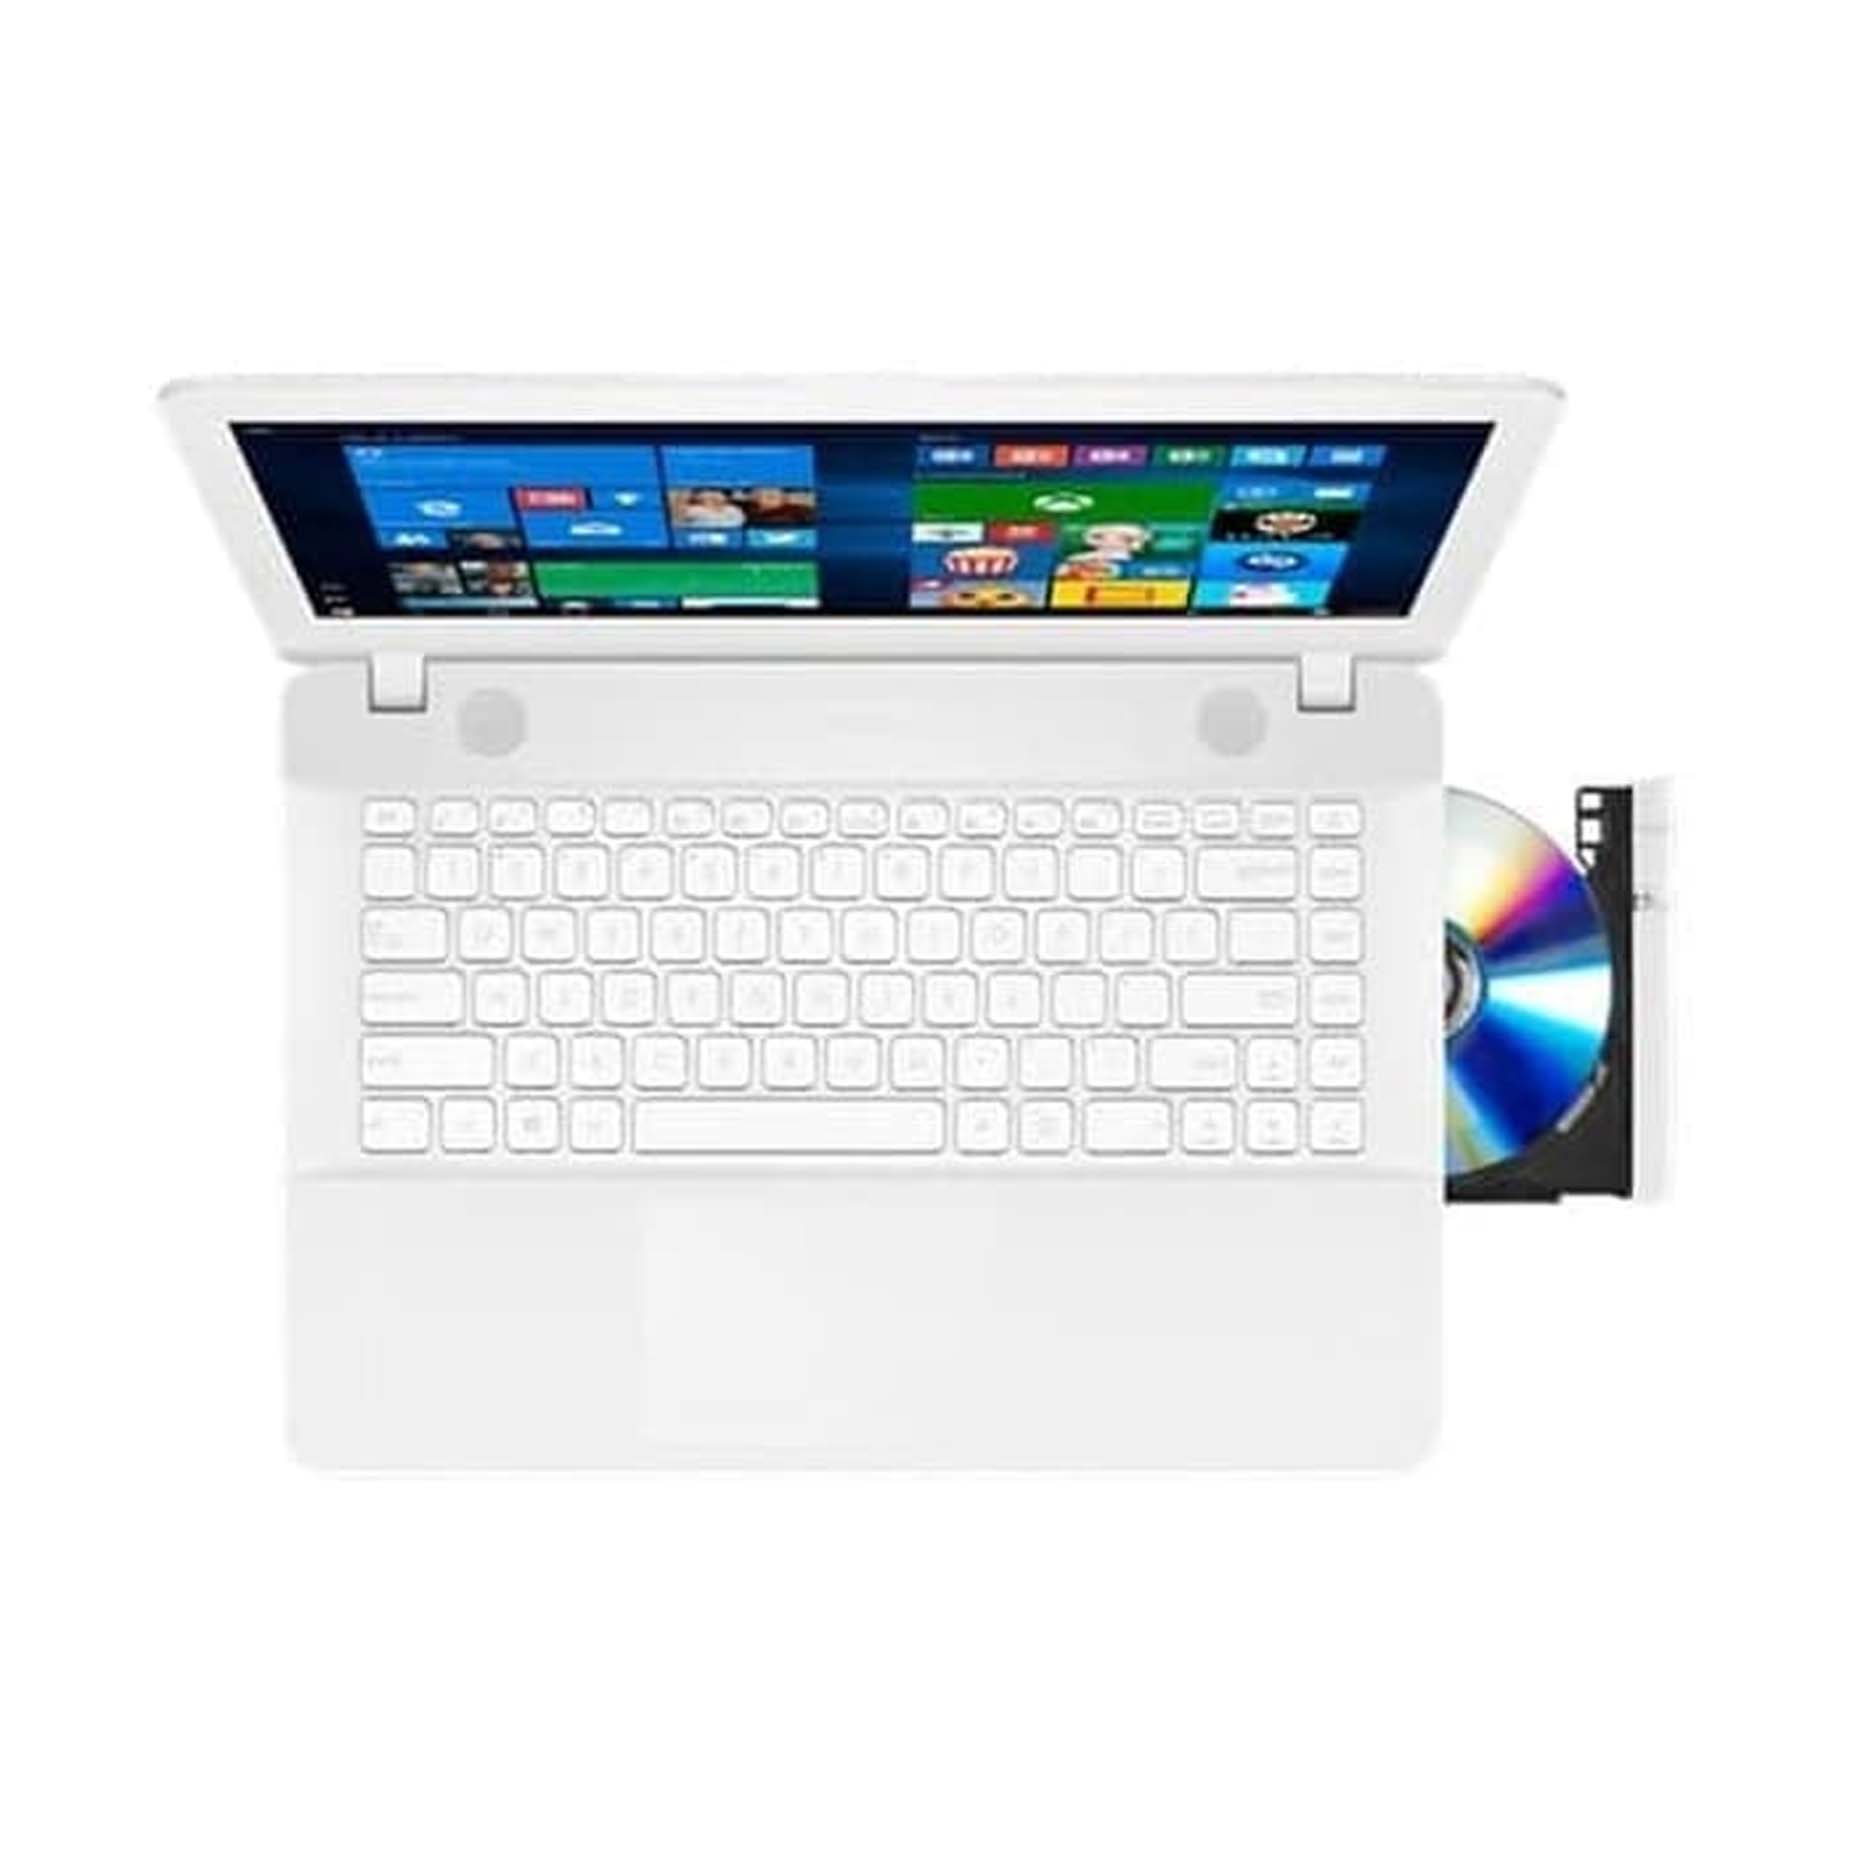 Harga Asus Notebook X441MA-GA014T White Intel Celeron N4000 4GB 1TB 14 inch Win 10